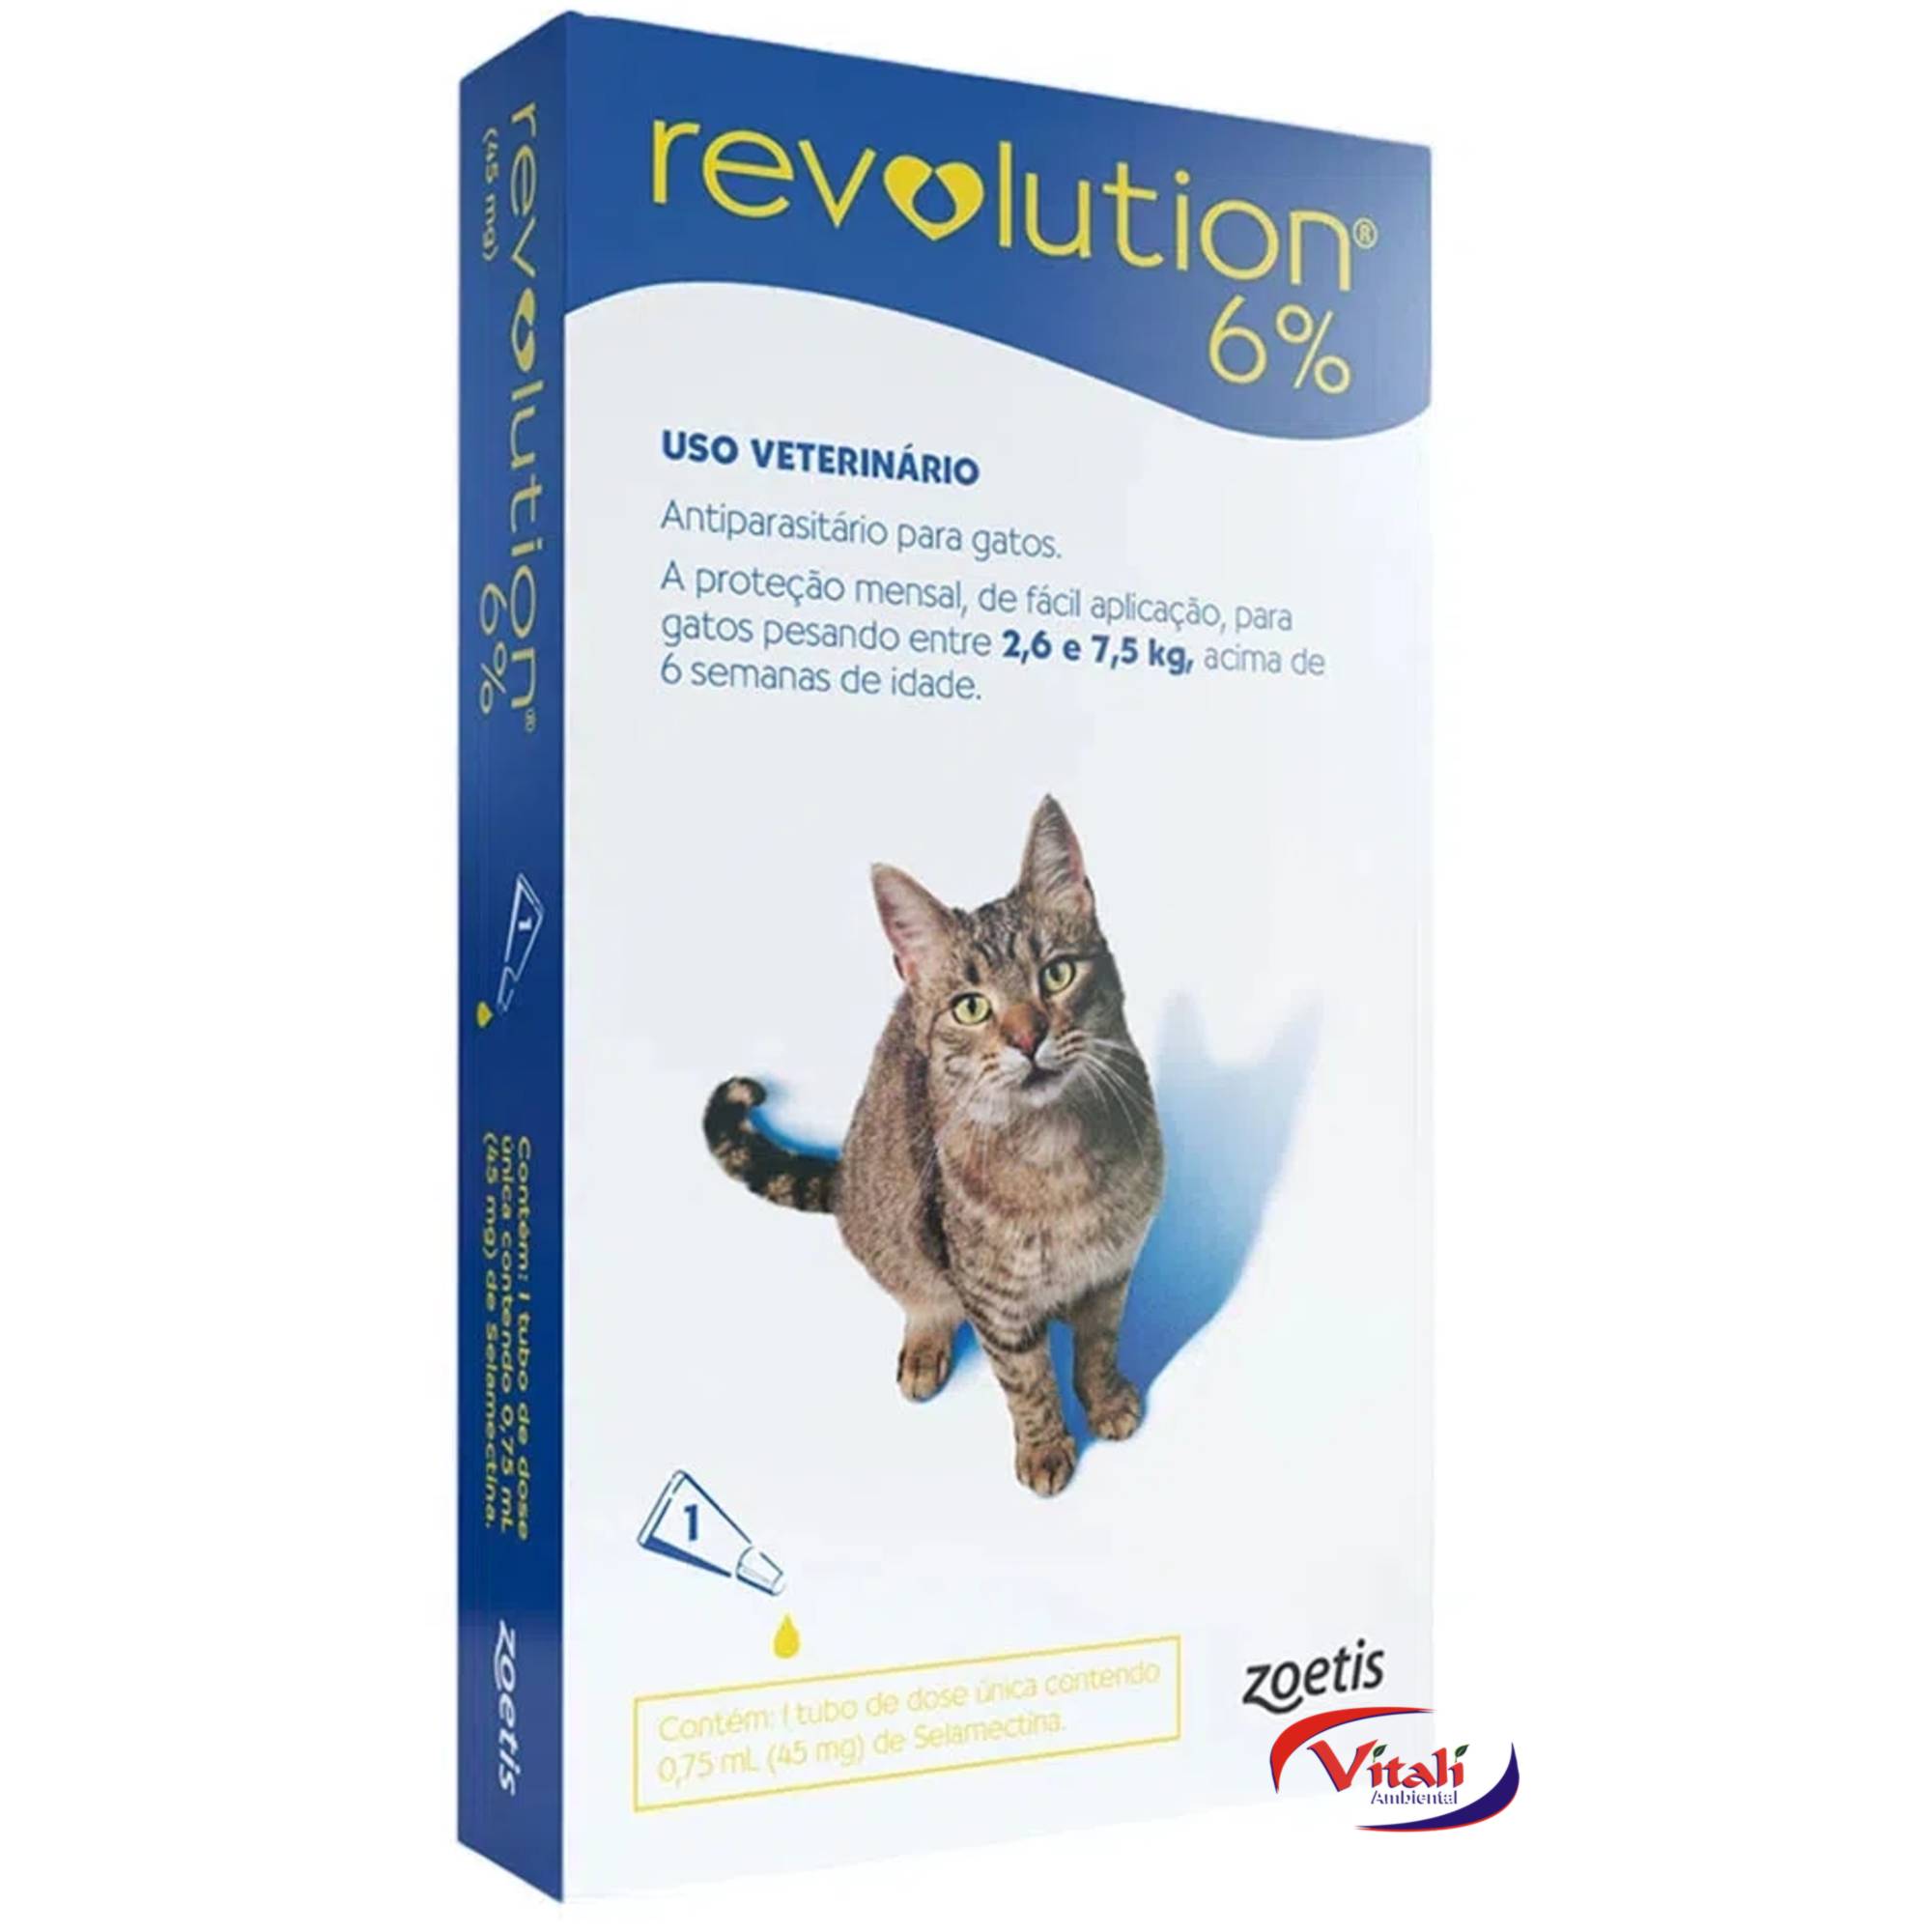 Revolution 6% para Gatos de 2,6kg até 7,5kg